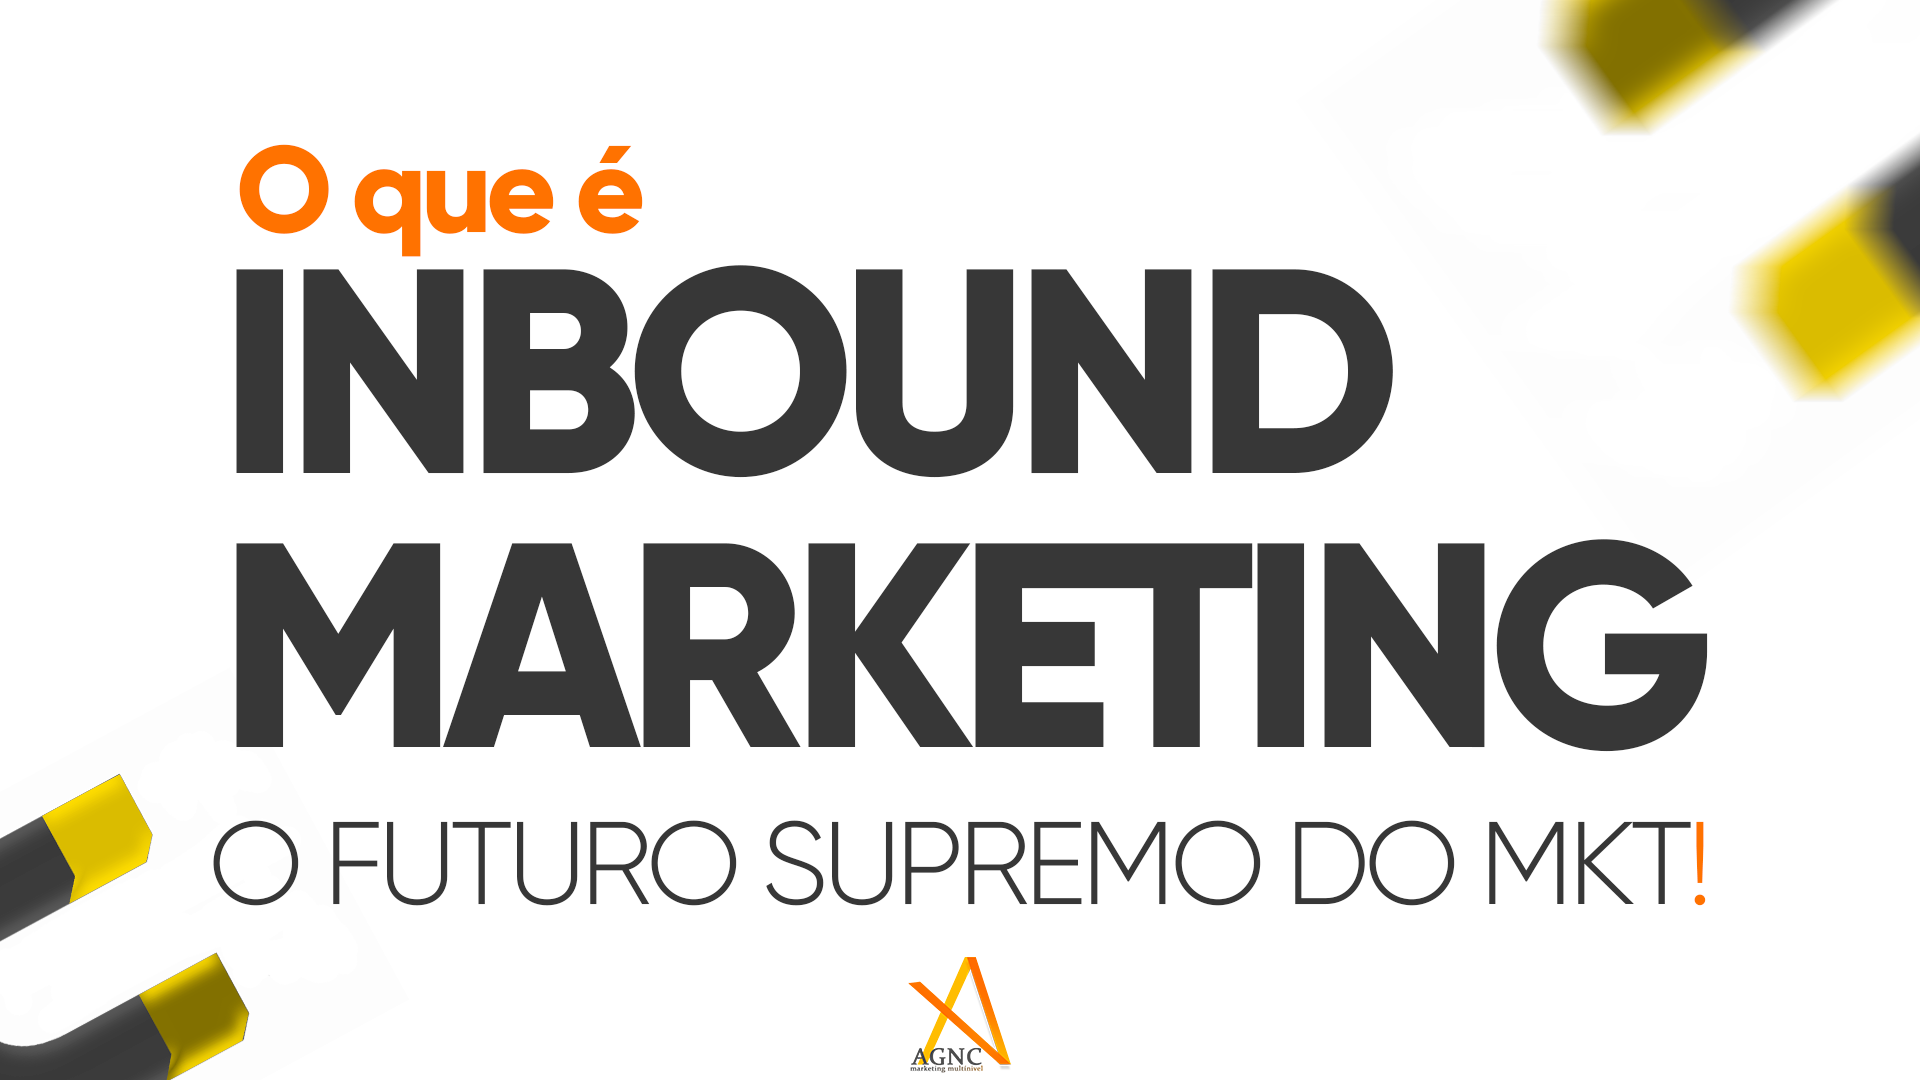 O que é Inbound Marketing? • Atração • Conteúdo • SEO Descubra o que é Inbound Marketing, a Técnica de atração e criação de conteúdo que a AGNC Marketing esta ajudando empresas de todo Brasil.